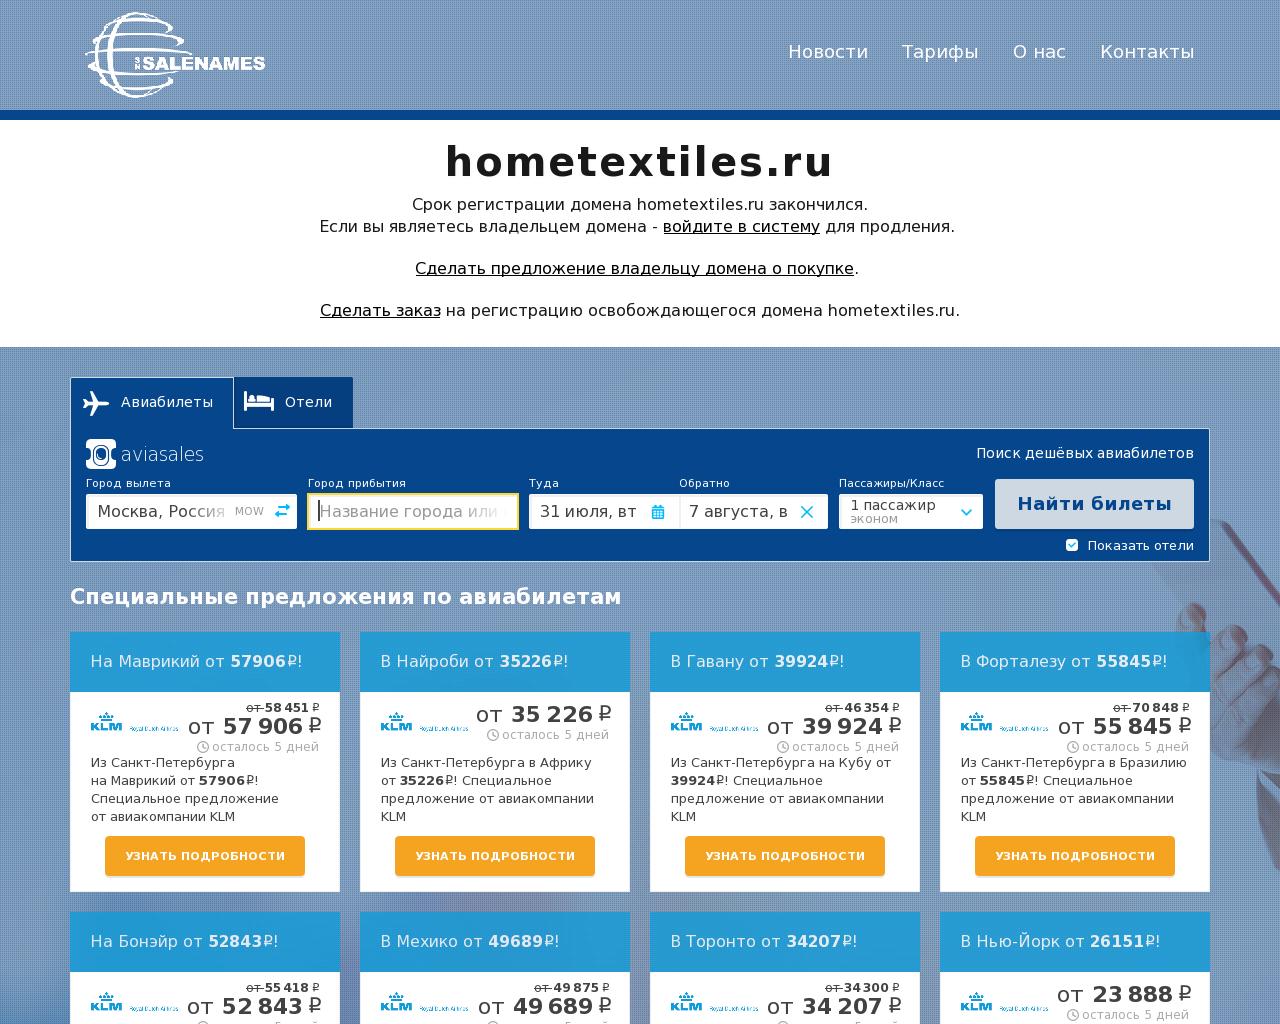 Изображение сайта hometextiles.ru в разрешении 1280x1024